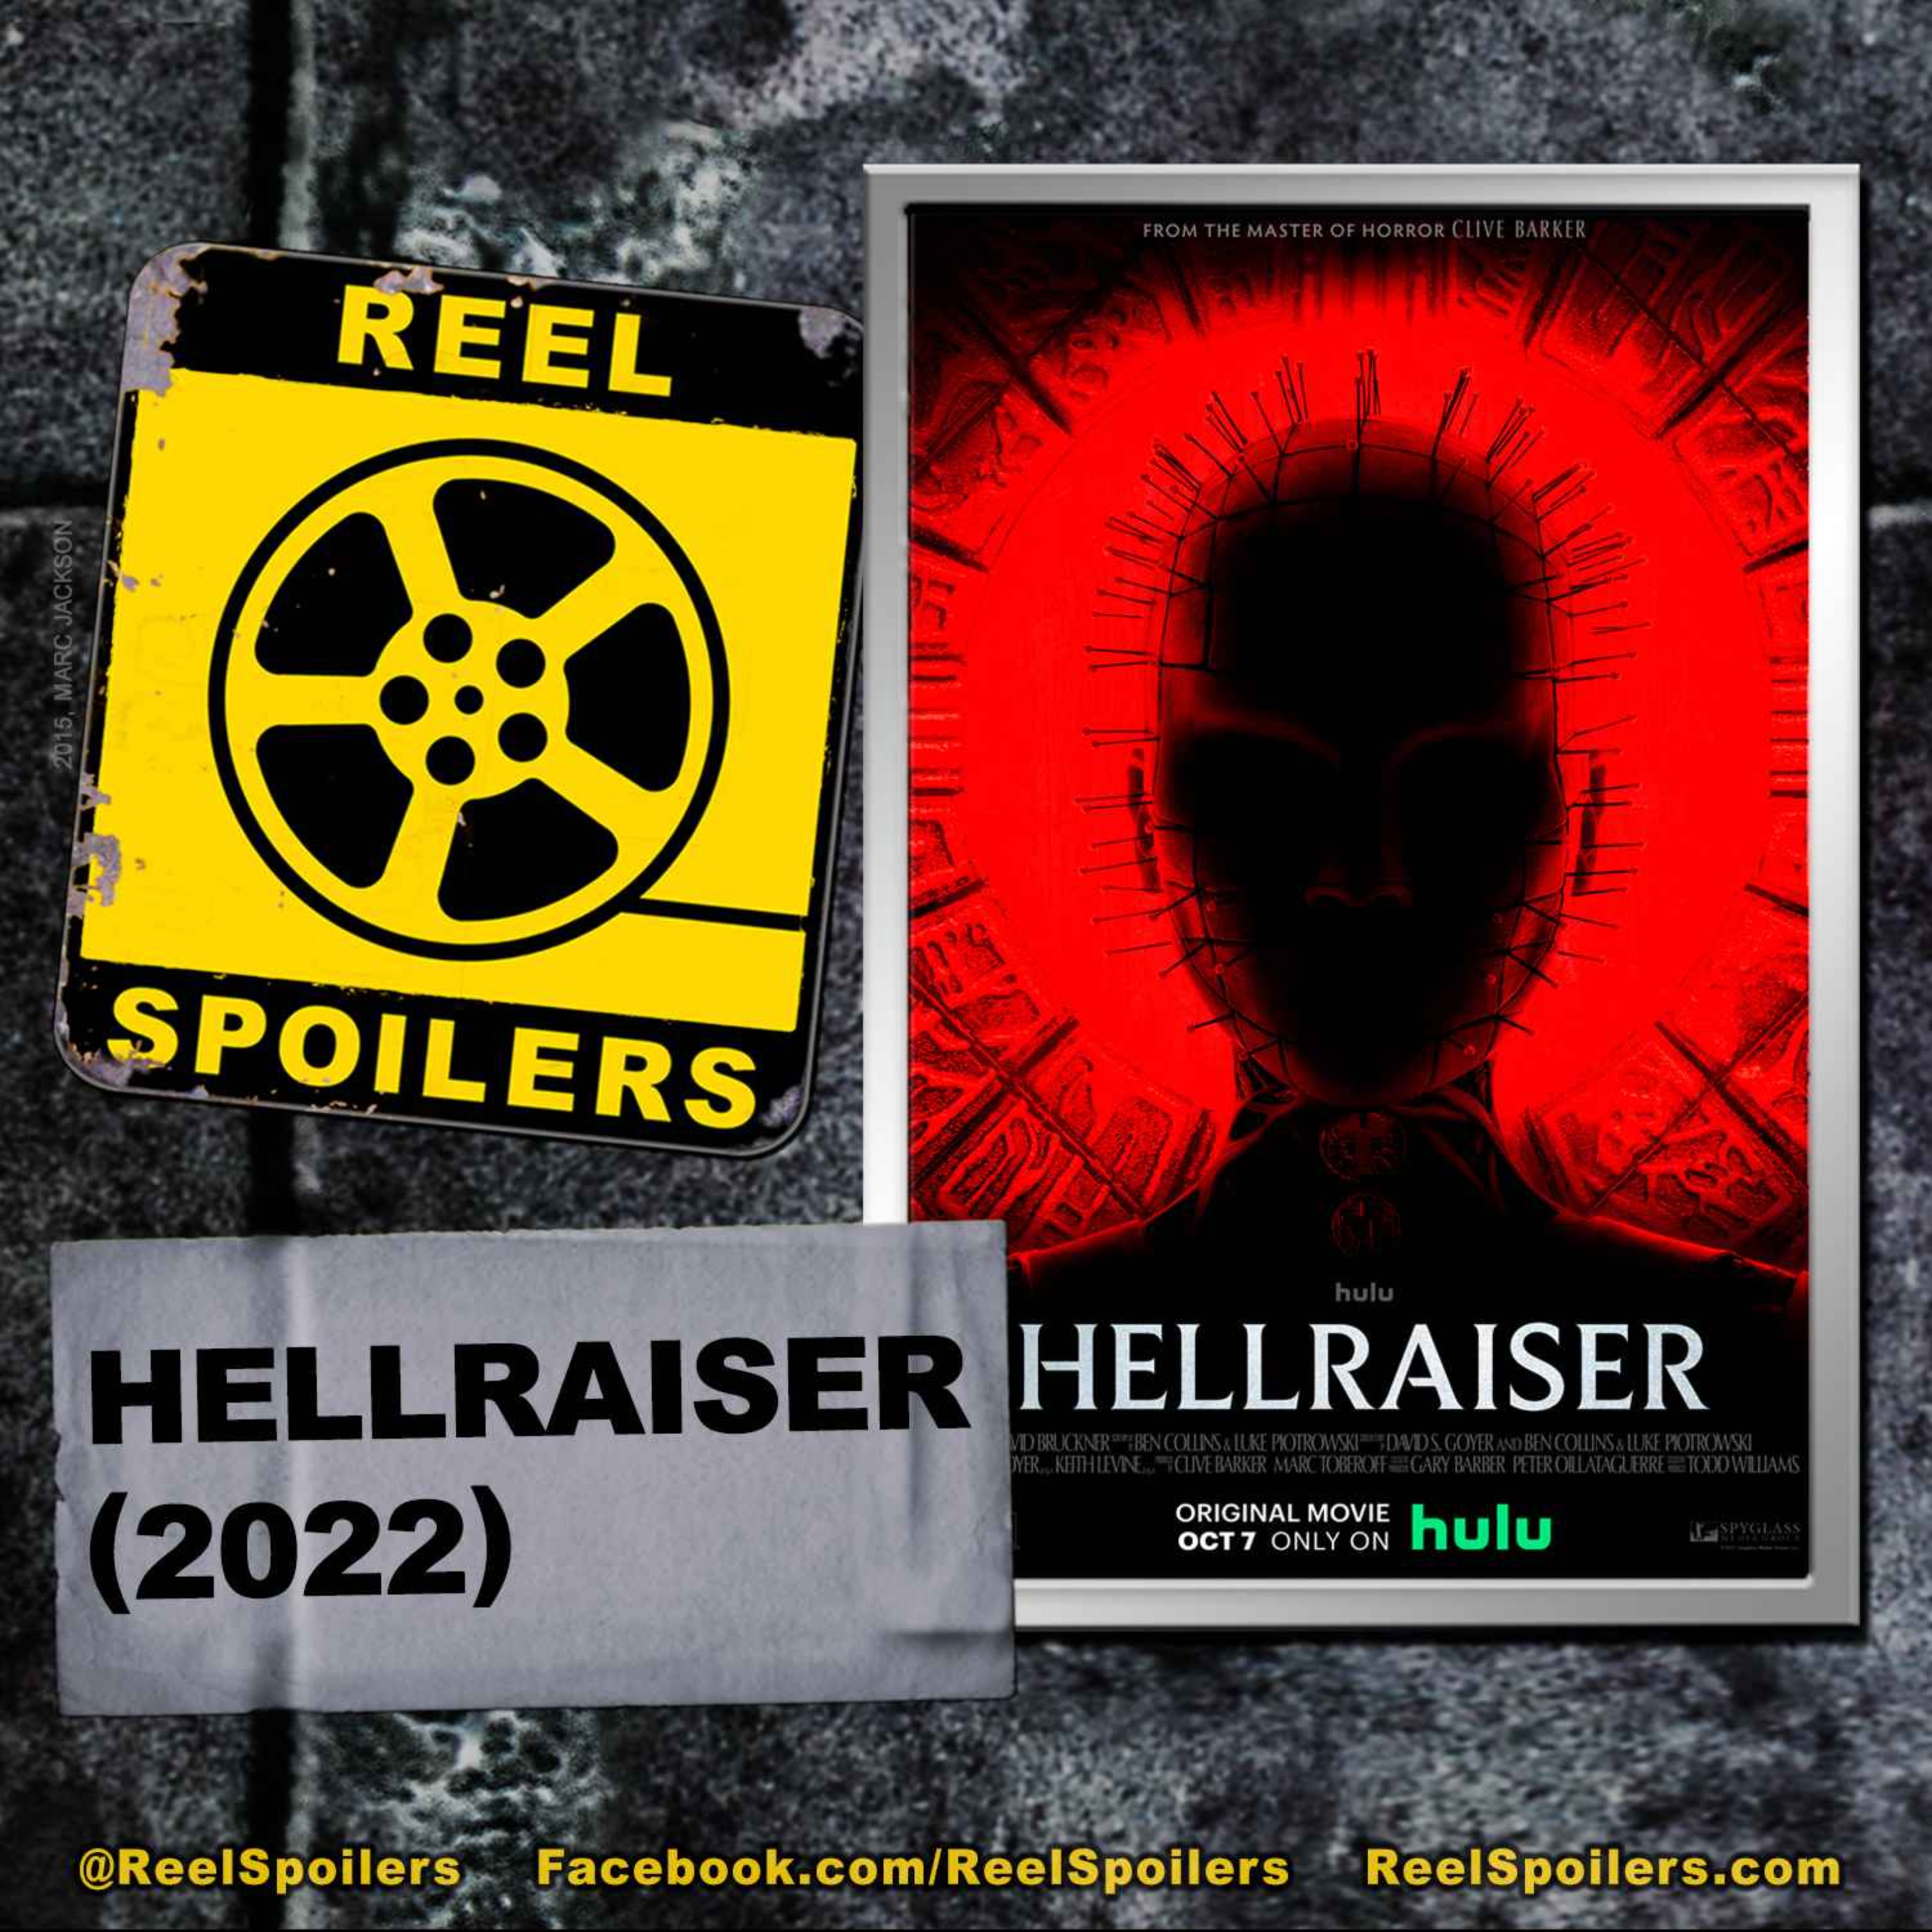 HELLRAISER (2022) Starring Odessa A'zion, Jamie Clayton, Brandon Flynn